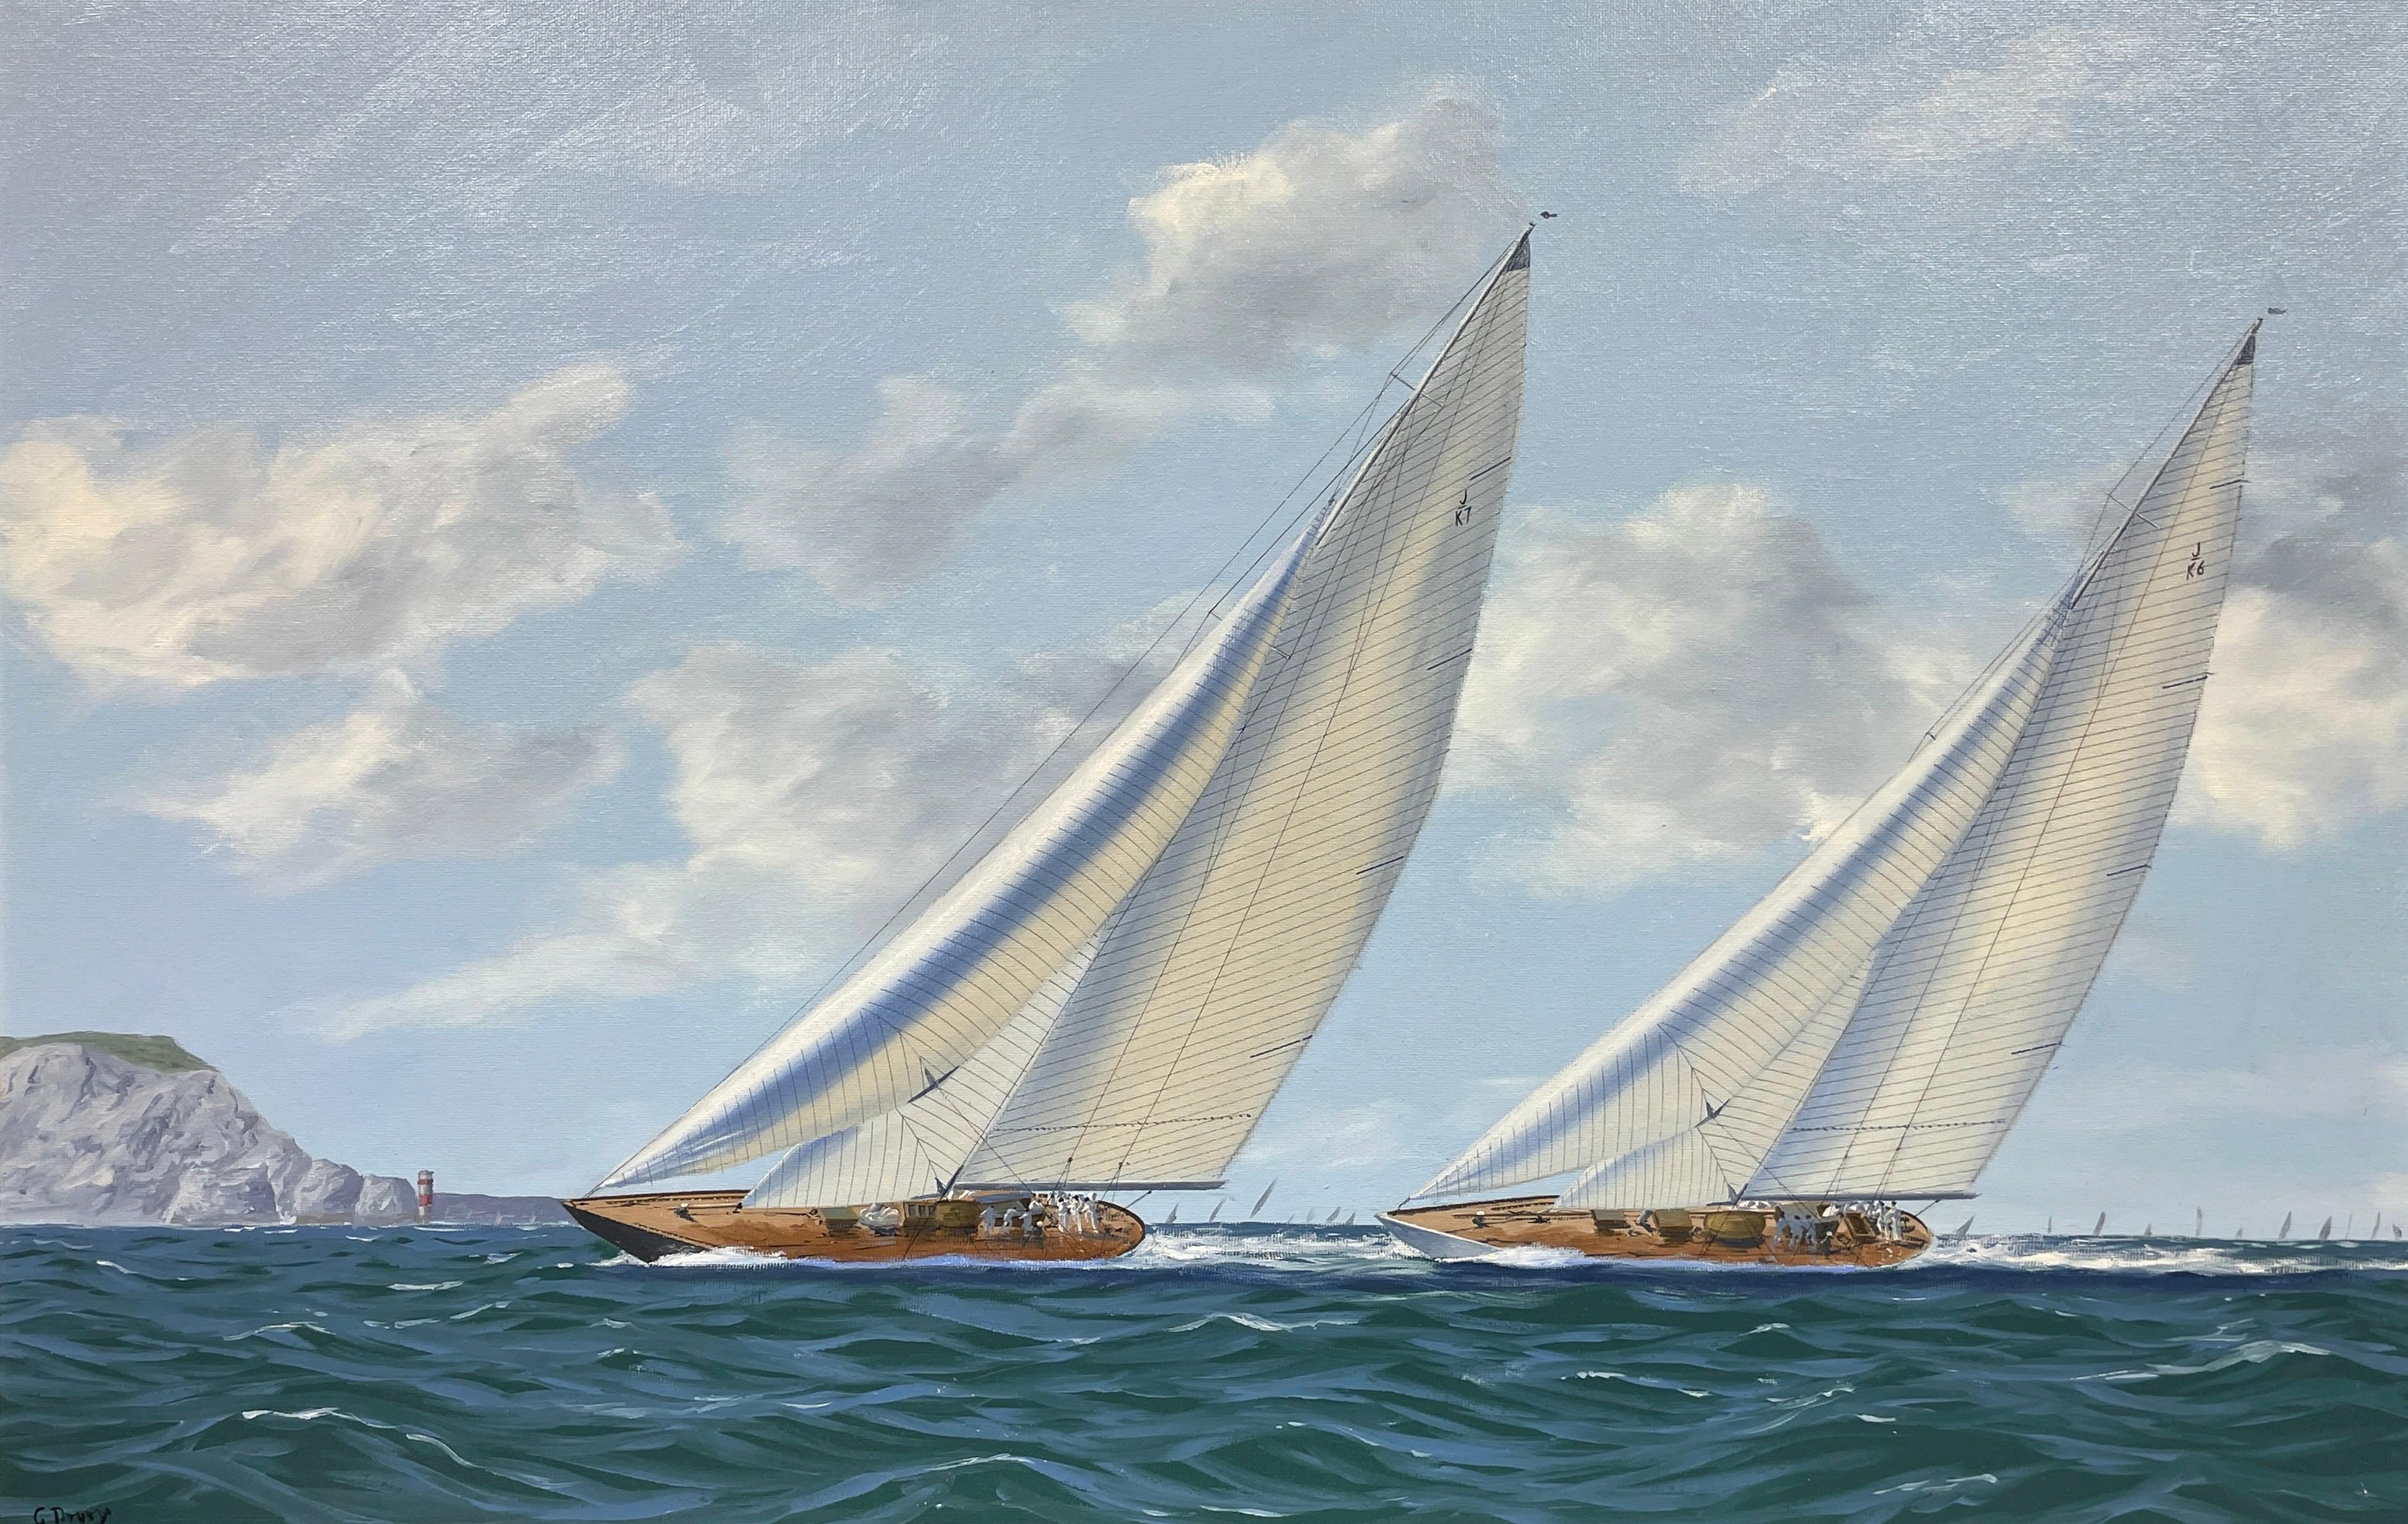 George Drury Figurative Painting – Klassische klassische Renn Yachts vor den Nadeln, signiertes Ölgemälde der britischen Marine